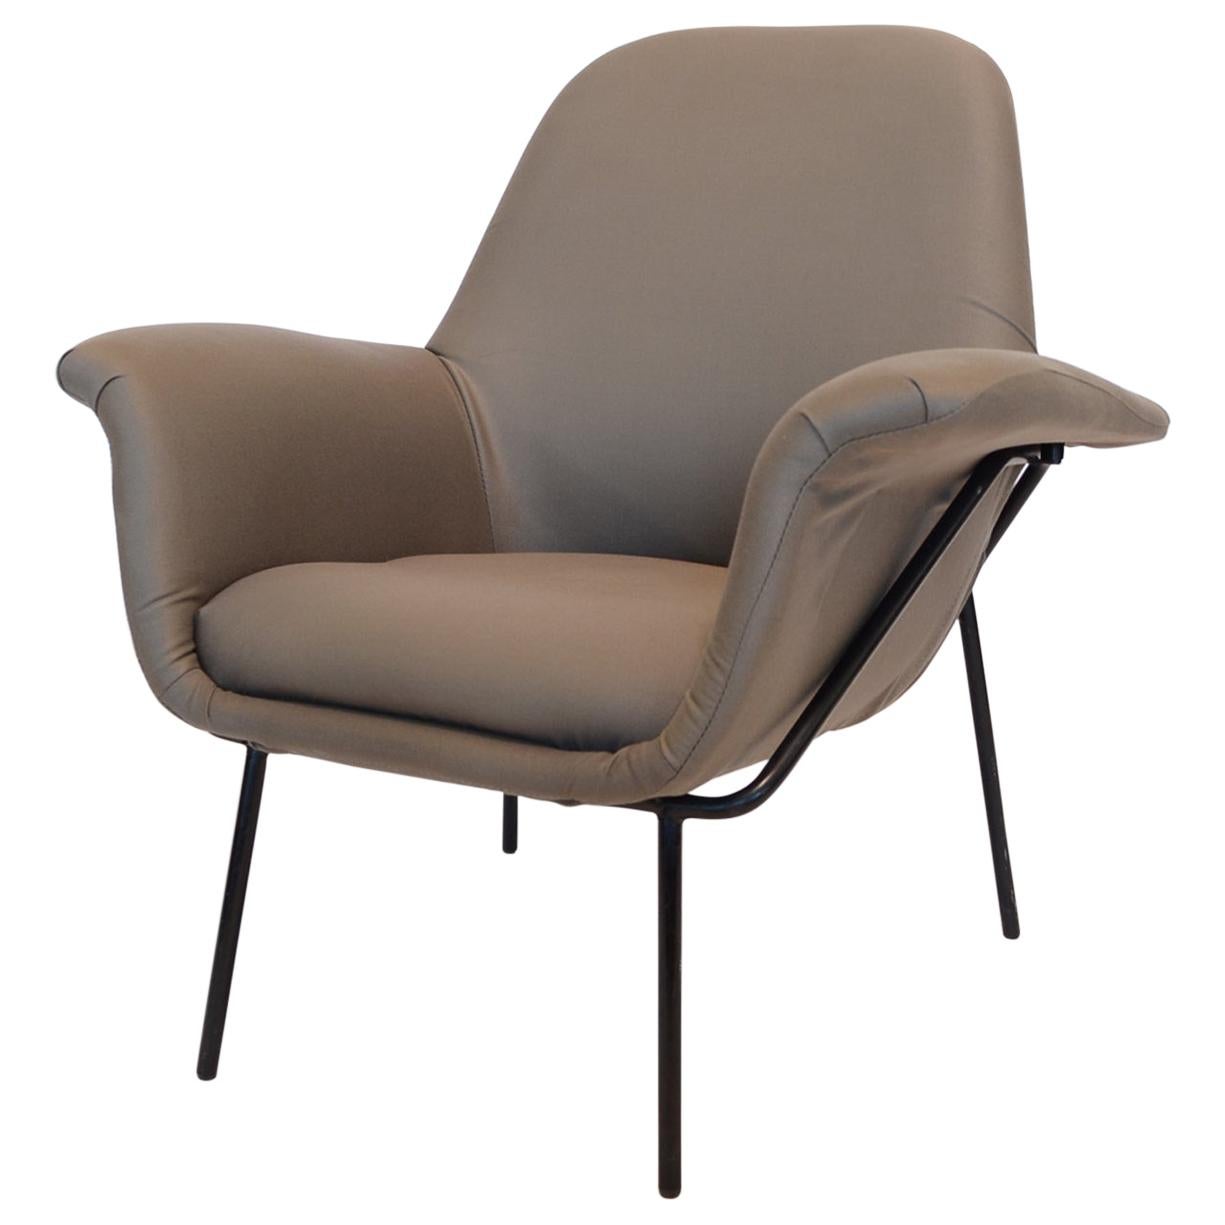 Giancarlo De Carlo "Lucania" Lounge Chair by Arflex